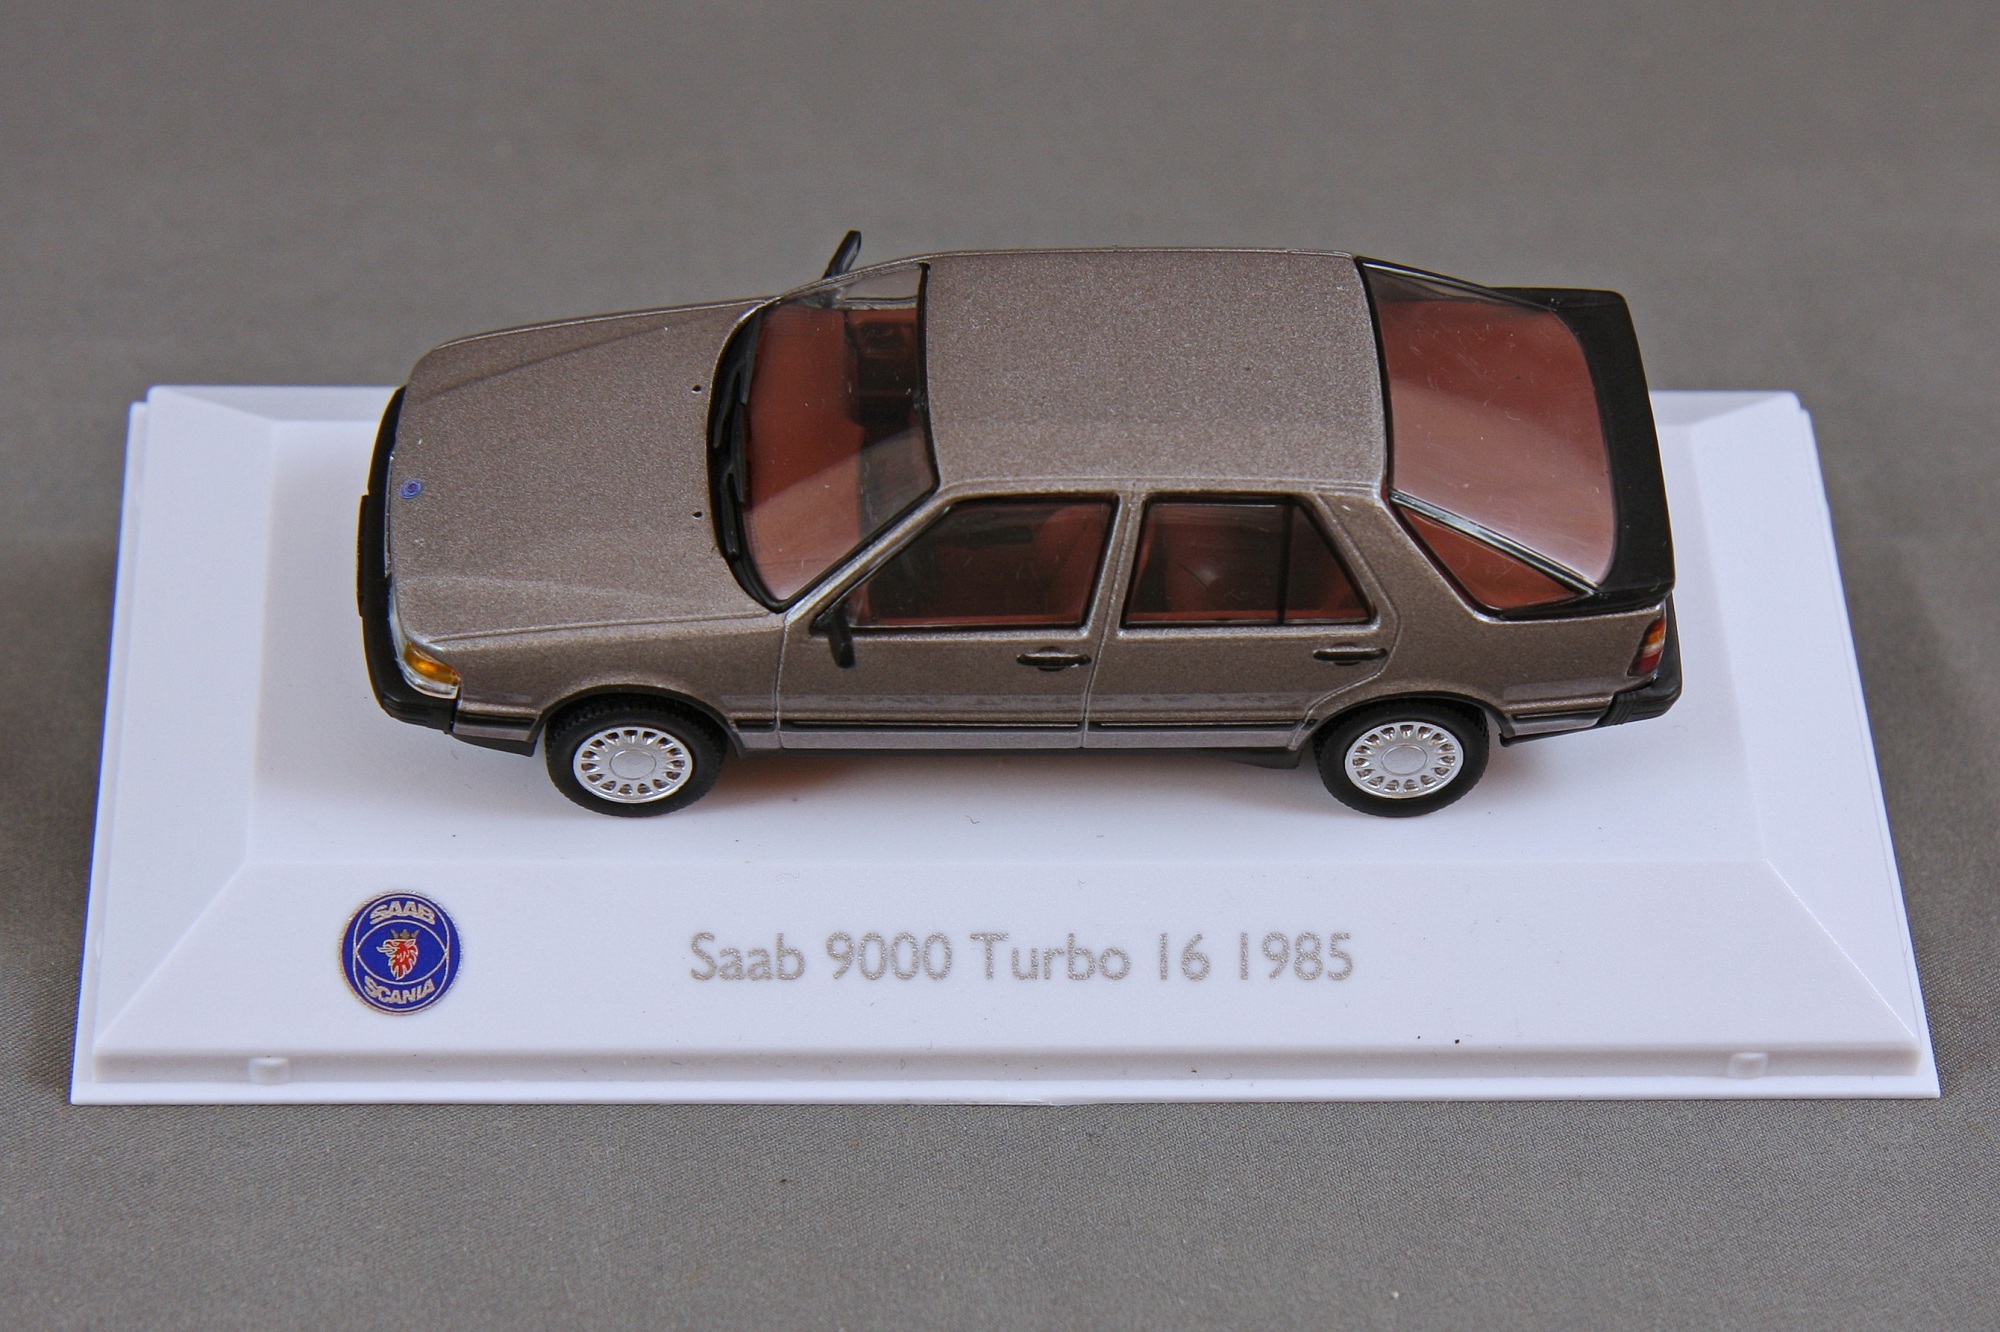 9000 - 1985 CC Turbo 16 Bild 8